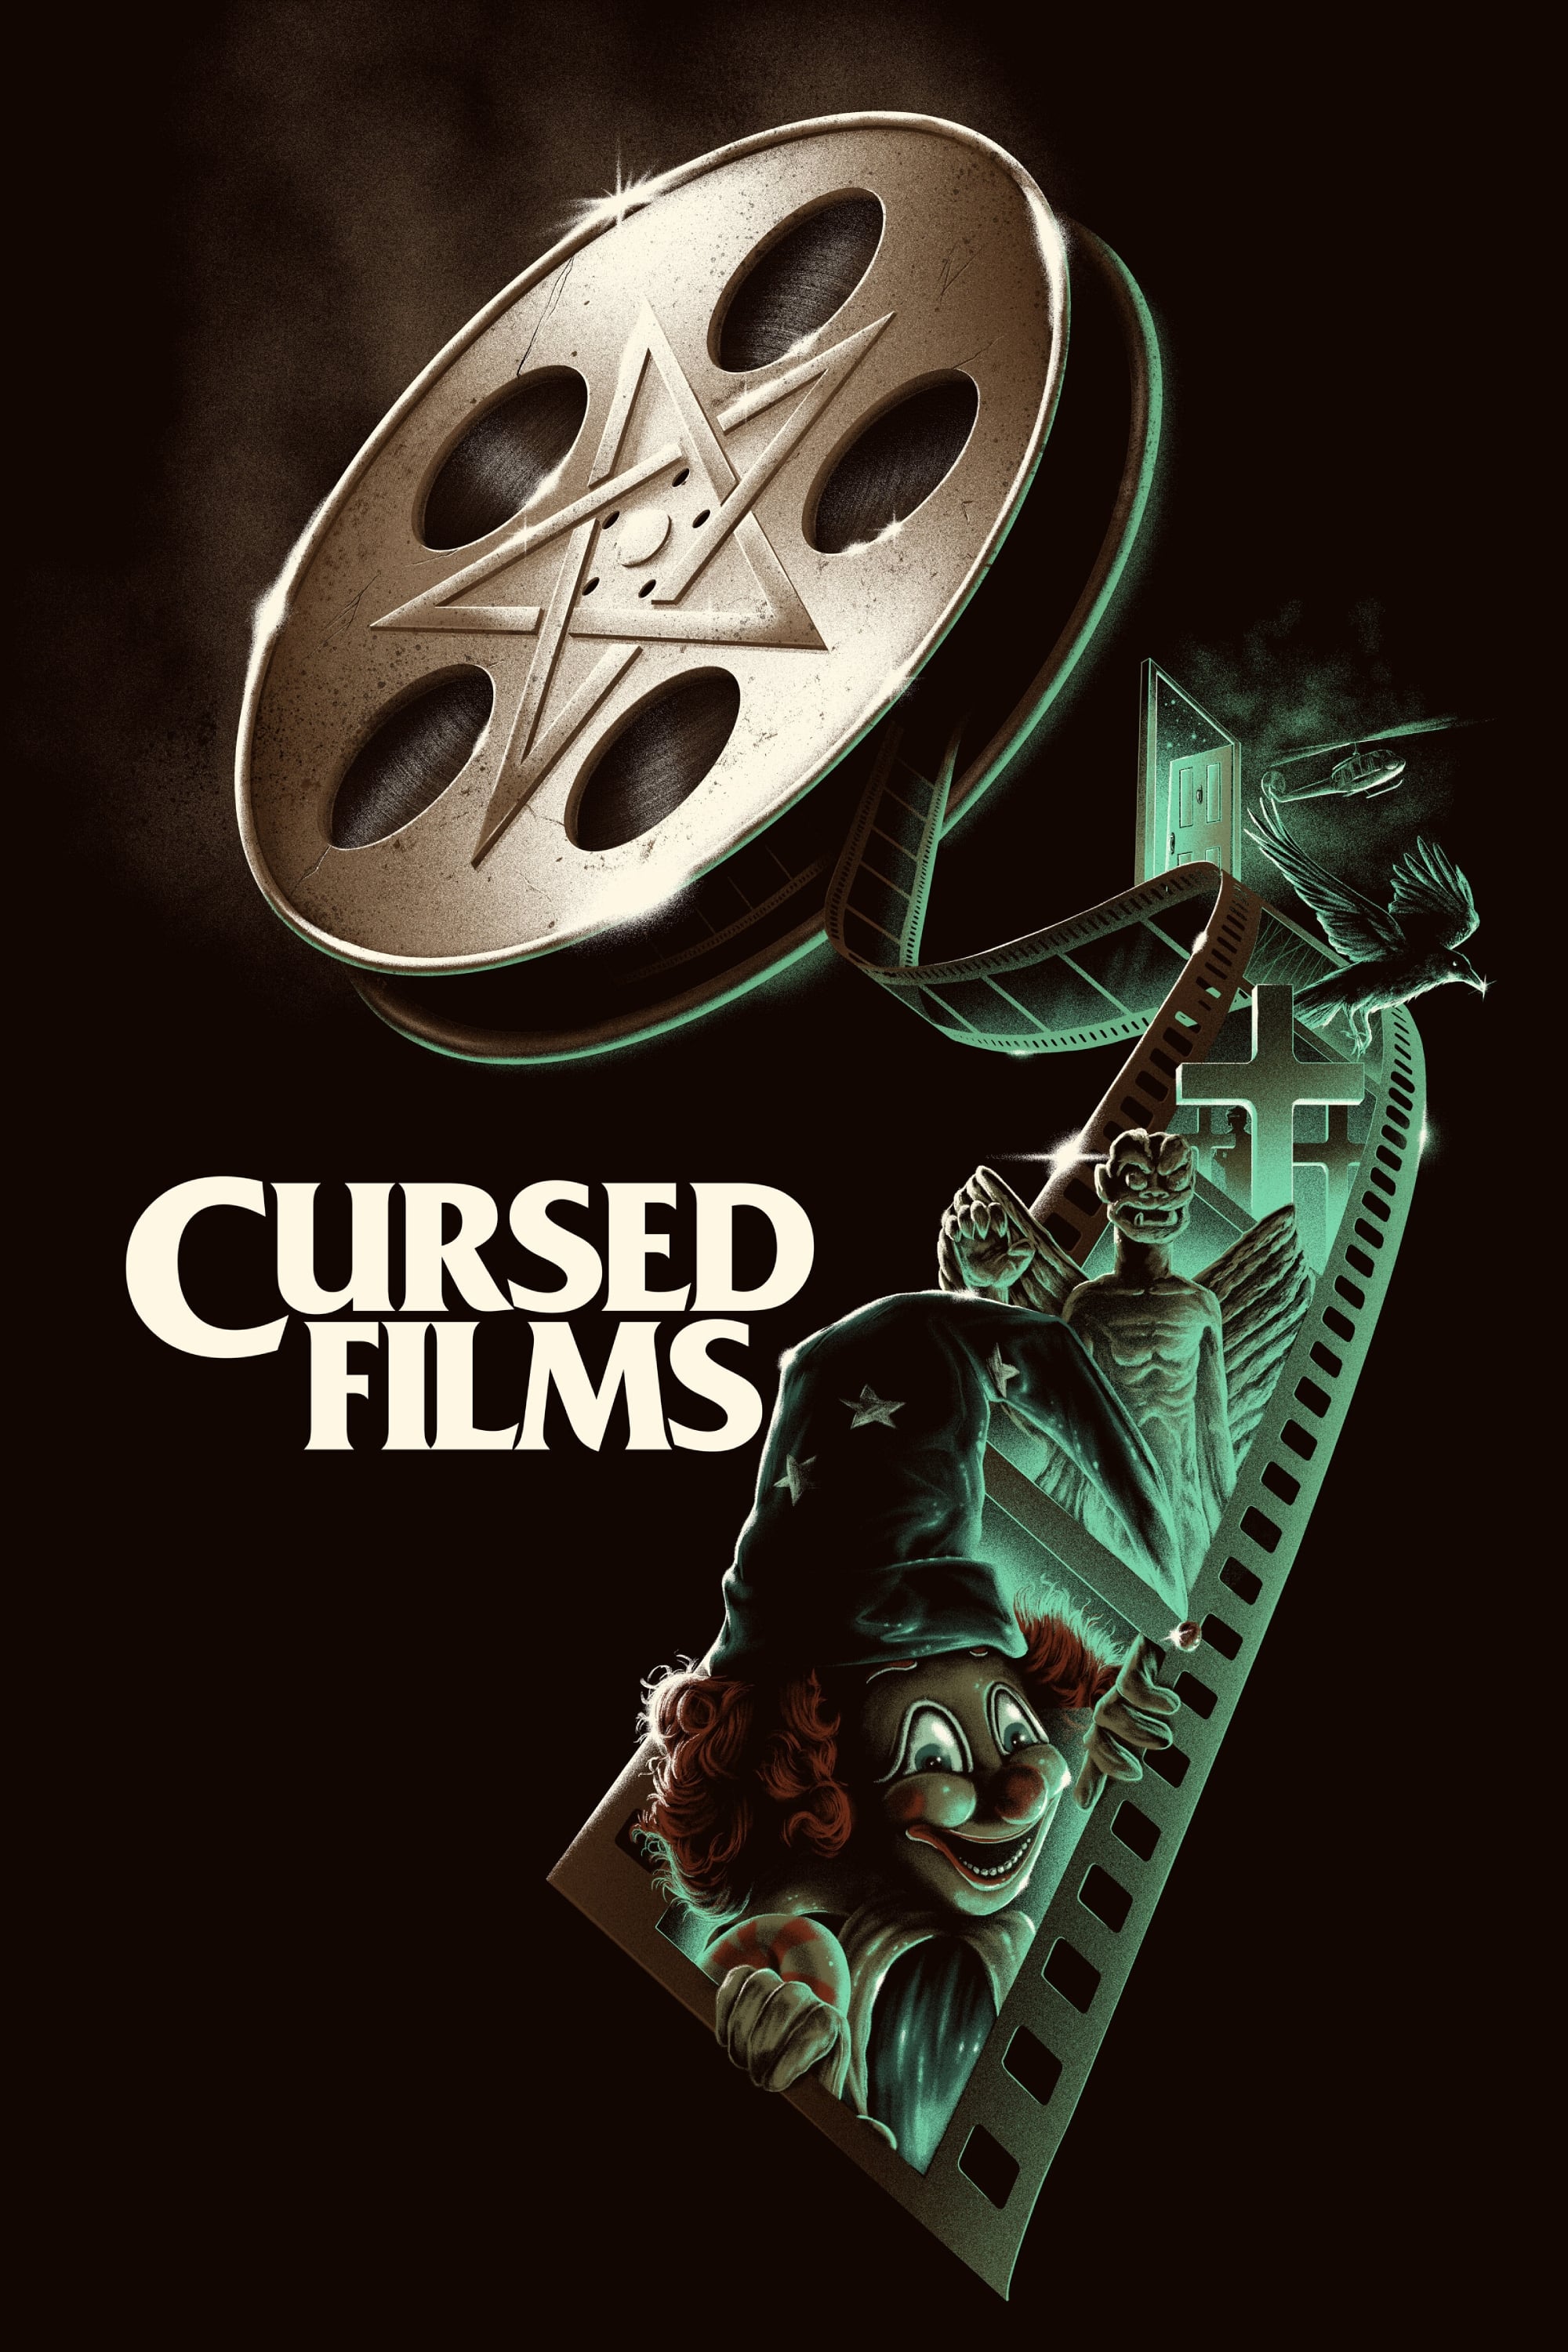 Caratula de Cursed Films (Películas malditas) 